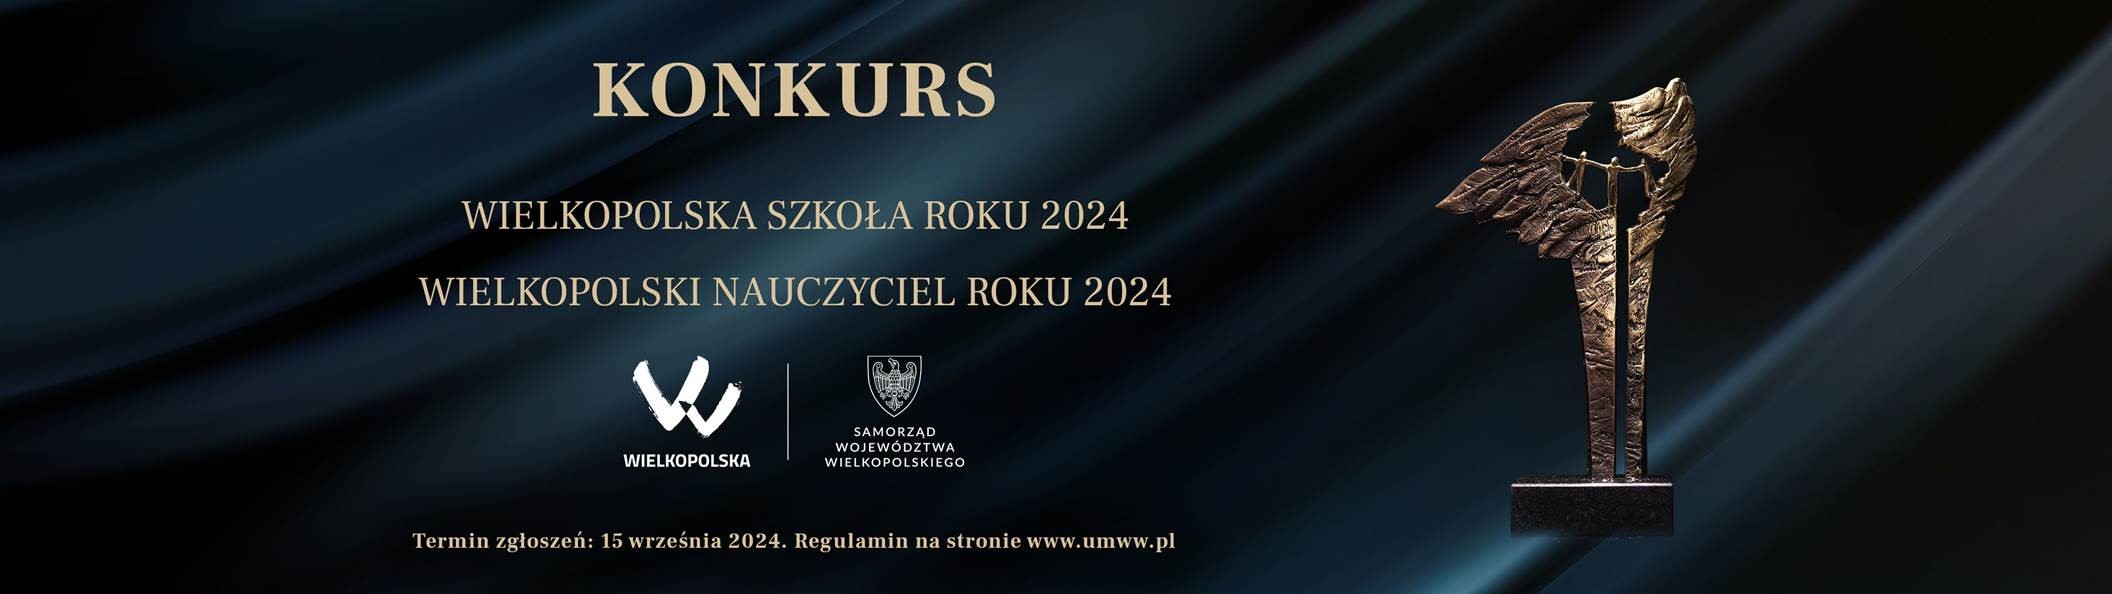 Konkurs Wielkopolska Szkoła Roku 2024 i Wielkopolski Nauczyciel Roku 2024